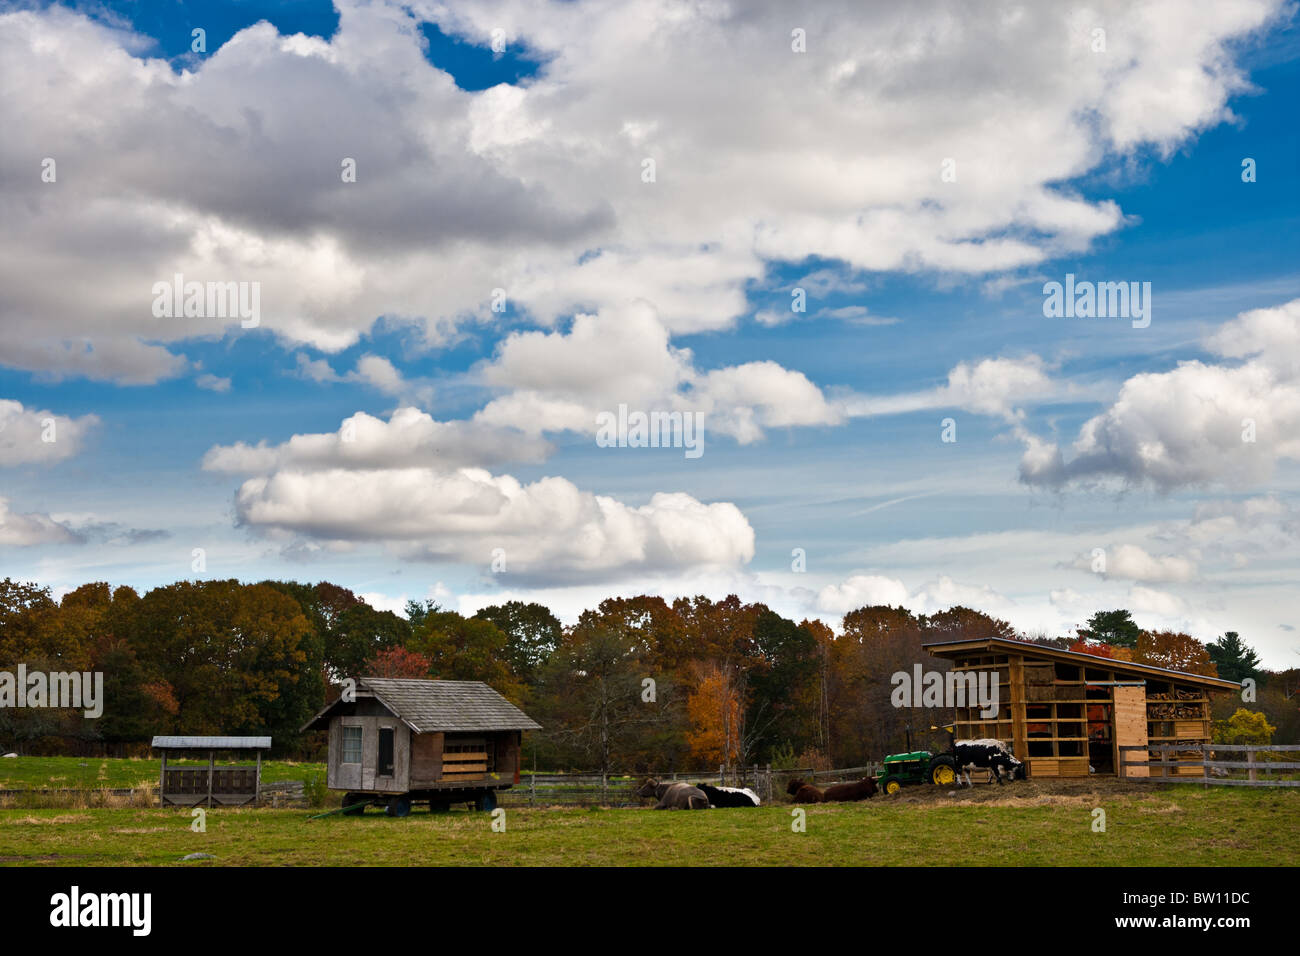 Farm in Fall Stock Photo